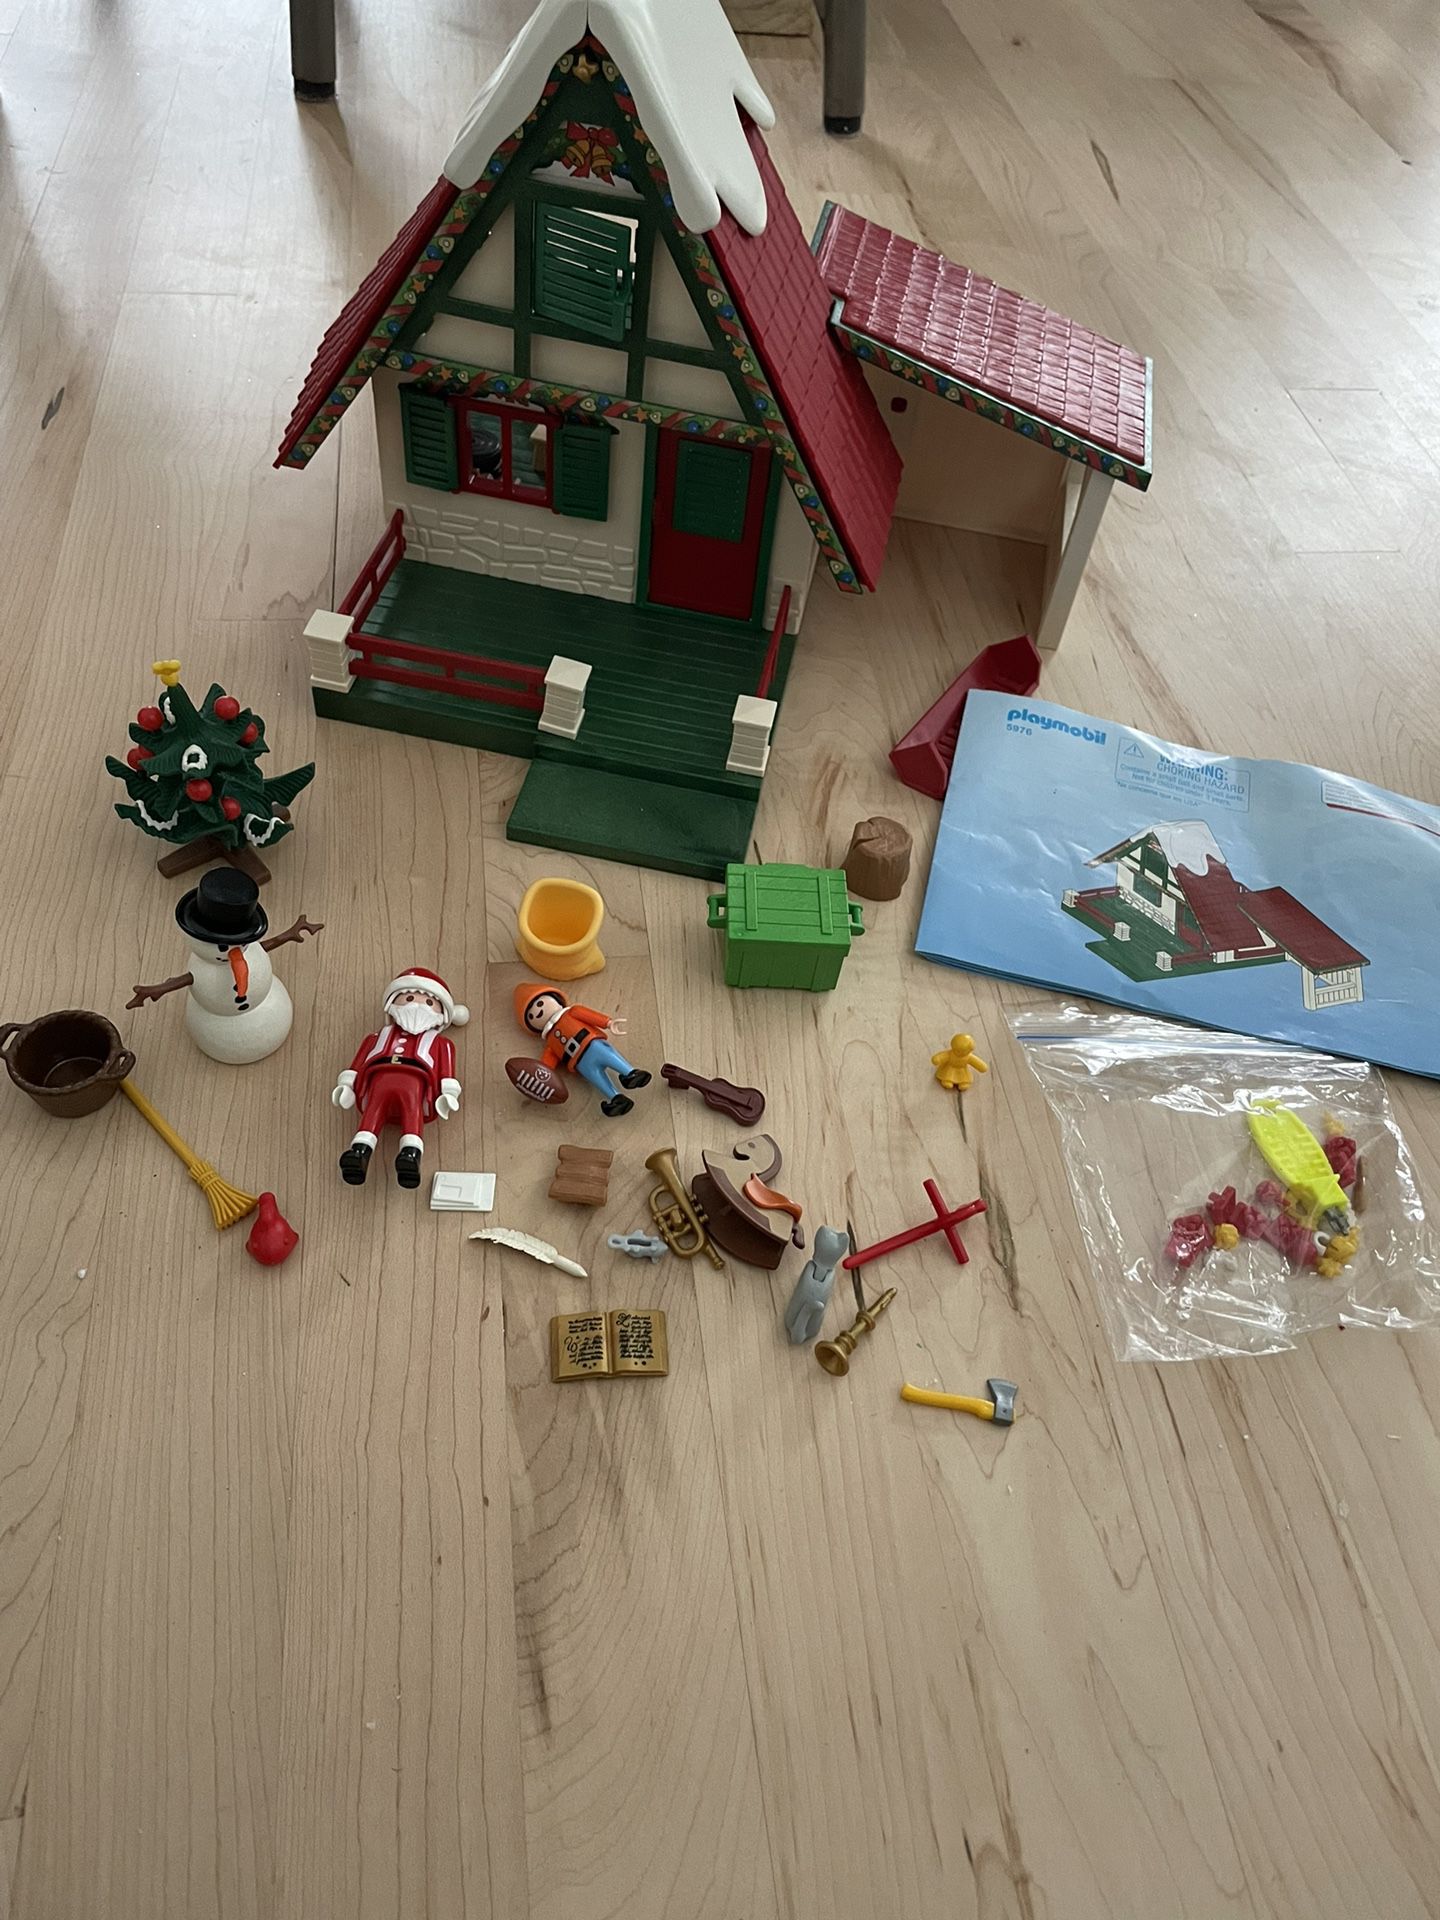 Playmobil Santa’s Home Set-FINAL PRICE DROP